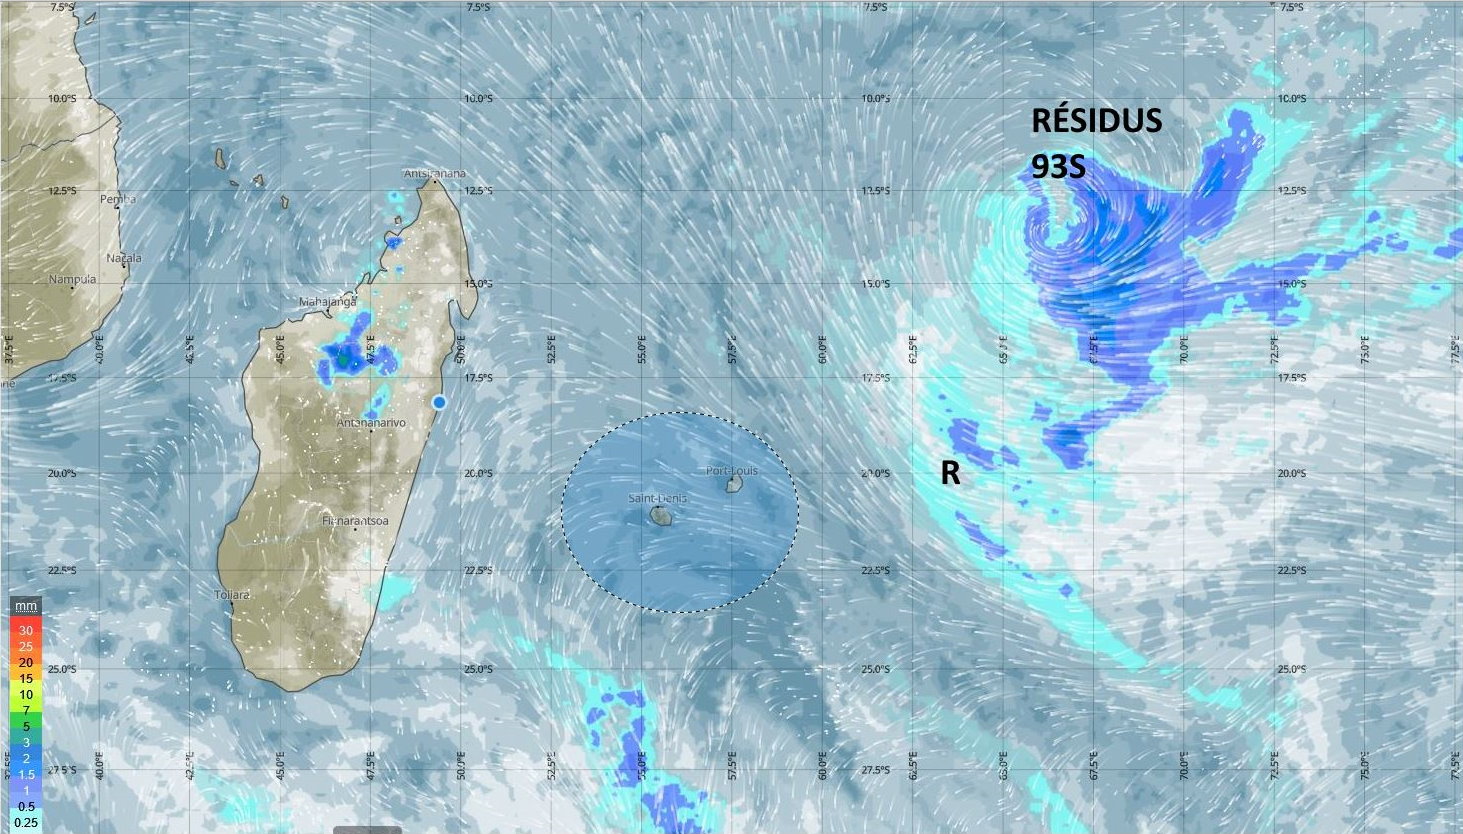 Bulletin prévision - Rodrigues  COMMUNIQUÉ DE LA MÉTÉO POUR RODRIGUES ÉMIS À 04H30 CE MERCREDI 03 NOVEMBRE 2021.     SITUATION GÉNÉRALE:  1. Quelques nuages dans le flux modéré du Sud-Est influenceront le temps pendant la journée.  2. A 04h00 ce matin, la zone de basse pression se trouvait à environ 890 km au Nord-Est de Rodrigues. Elle maintient son déplacement lent vers l'Ouest tout en s'affaiblissant davantage. Des nuages évoluant au Sud de la circulation de ce système commenceront à influencer le temps local durant la nuit.    PRÉVISIONS POUR LES PROCHAINES 24 HEURES:  Plutôt beau temps tôt ce matin. Mi-couvert au cours de la journée devenant nuageux par moments avec quelques ondées principalement sur les hauteurs.    La température maximale variera entre 25 et 28 degrés Celsius.    Nuageux durant la nuit avec des averses qui deviendront graduellement plus fréquentes.    La température minimale sera entre 20 et 22 degrés Celsius.   Vent du Sud-Est à environ 25 km/h, avec des pointes de 50 km/h aux endroits exposés, se renforçant durant la nuit avec des rafales atteignant les 60 km/h.     Mer agitée au-delà des récifs avec des vagues d'environ 2 mètres.   La pluviométrie durant les dernières 24 heures du 02 Novembre 2021 à 04h00 jusqu'au 03 Novembre 2021 à 04h00:  Pointe Canon             :  0.0 mm.  Plaine Corail              :  0.0 mm.  Montagne du Sable  :  0.0 mm.  Patate Théophile       :  0.0 mm.     Marées hautes:  11h44 et demain 00h00.  Marées basses: 17h56 et demain 06h04.     Lever du soleil      : 05h03.  Coucher du soleil : 17h56.